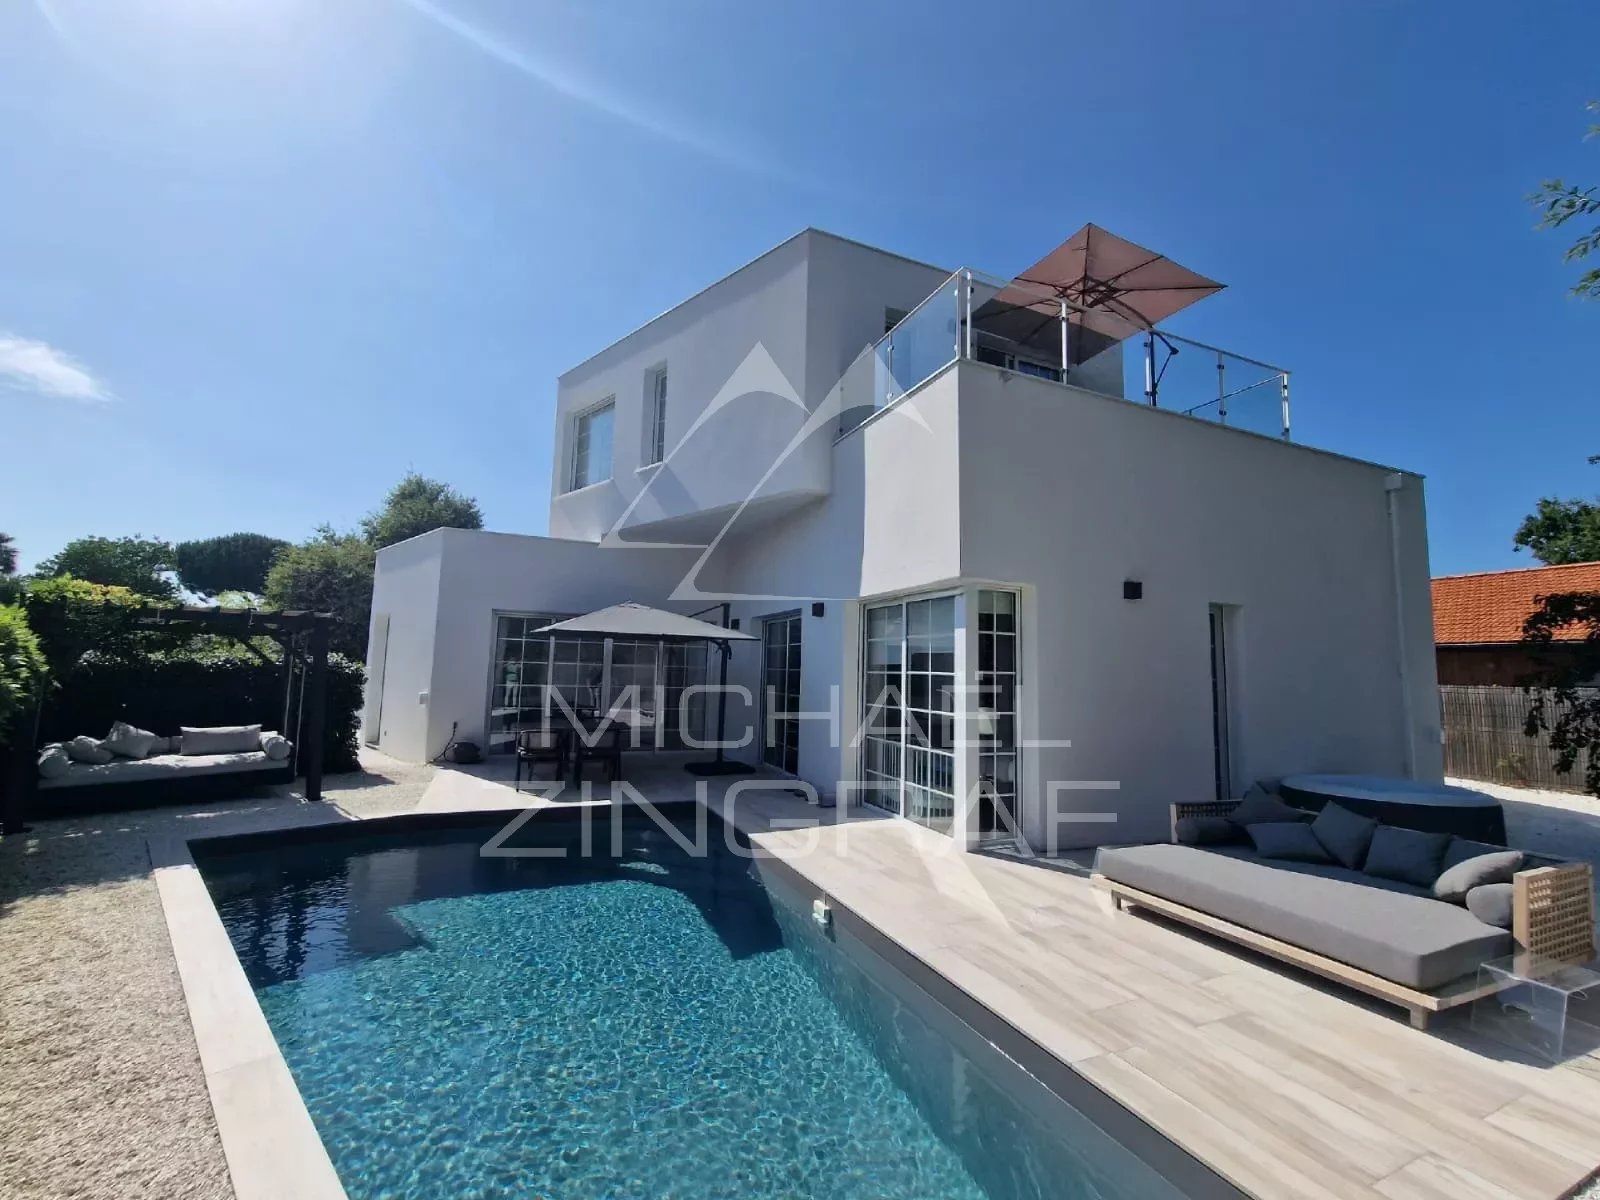 La Hume - Architect designed villa - Swimming pool